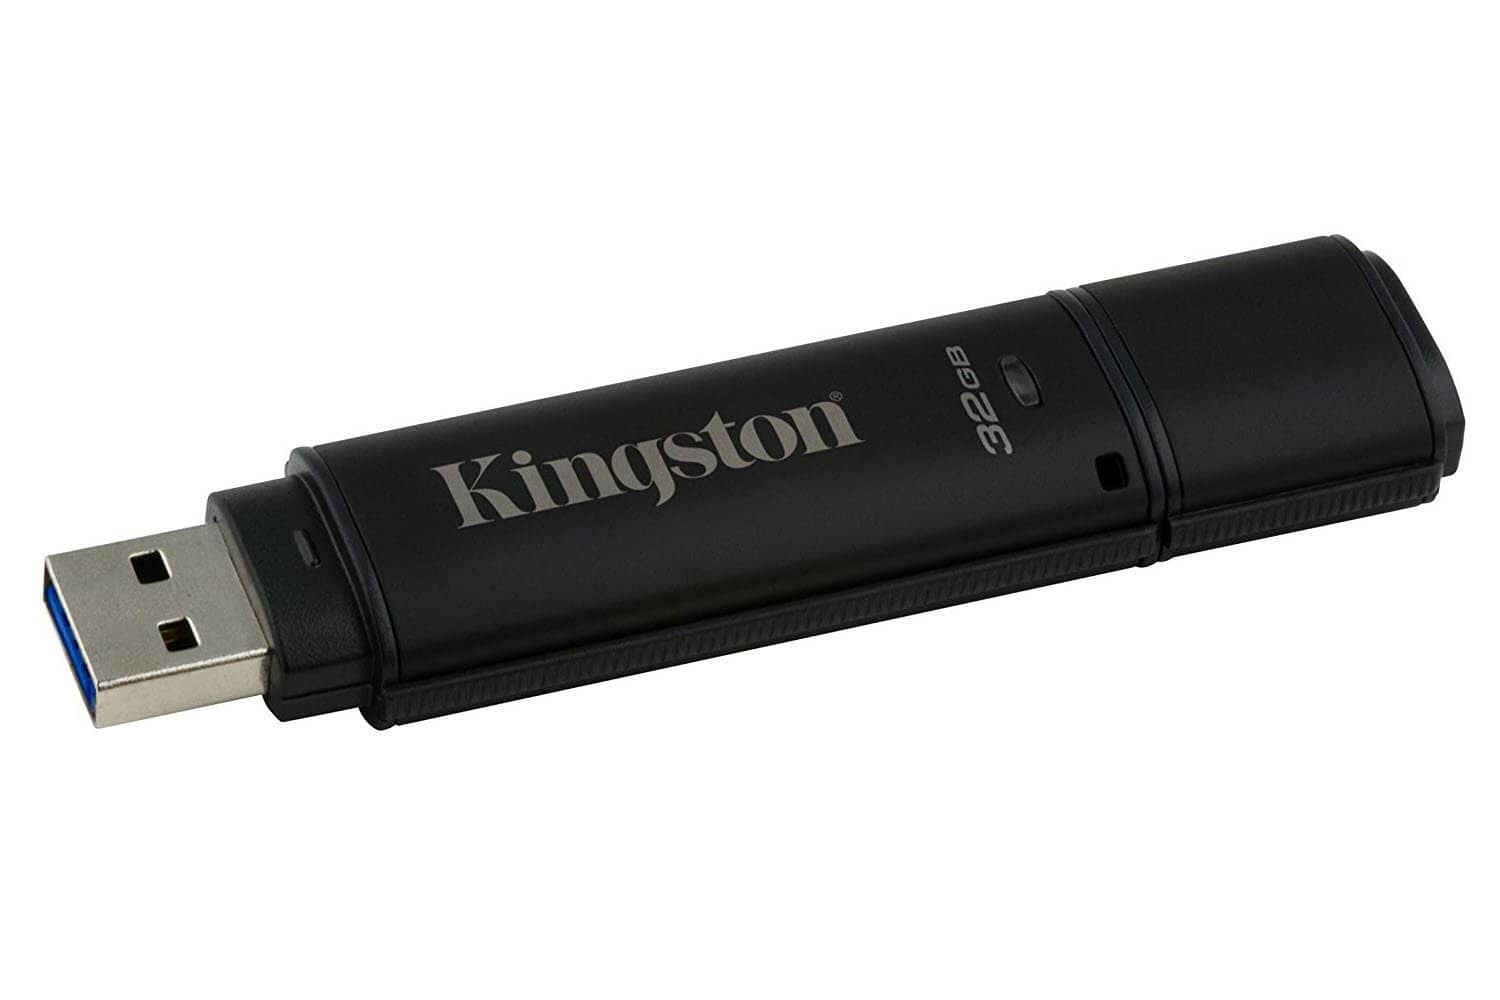 Kingston Digital 32GB USB 3.0